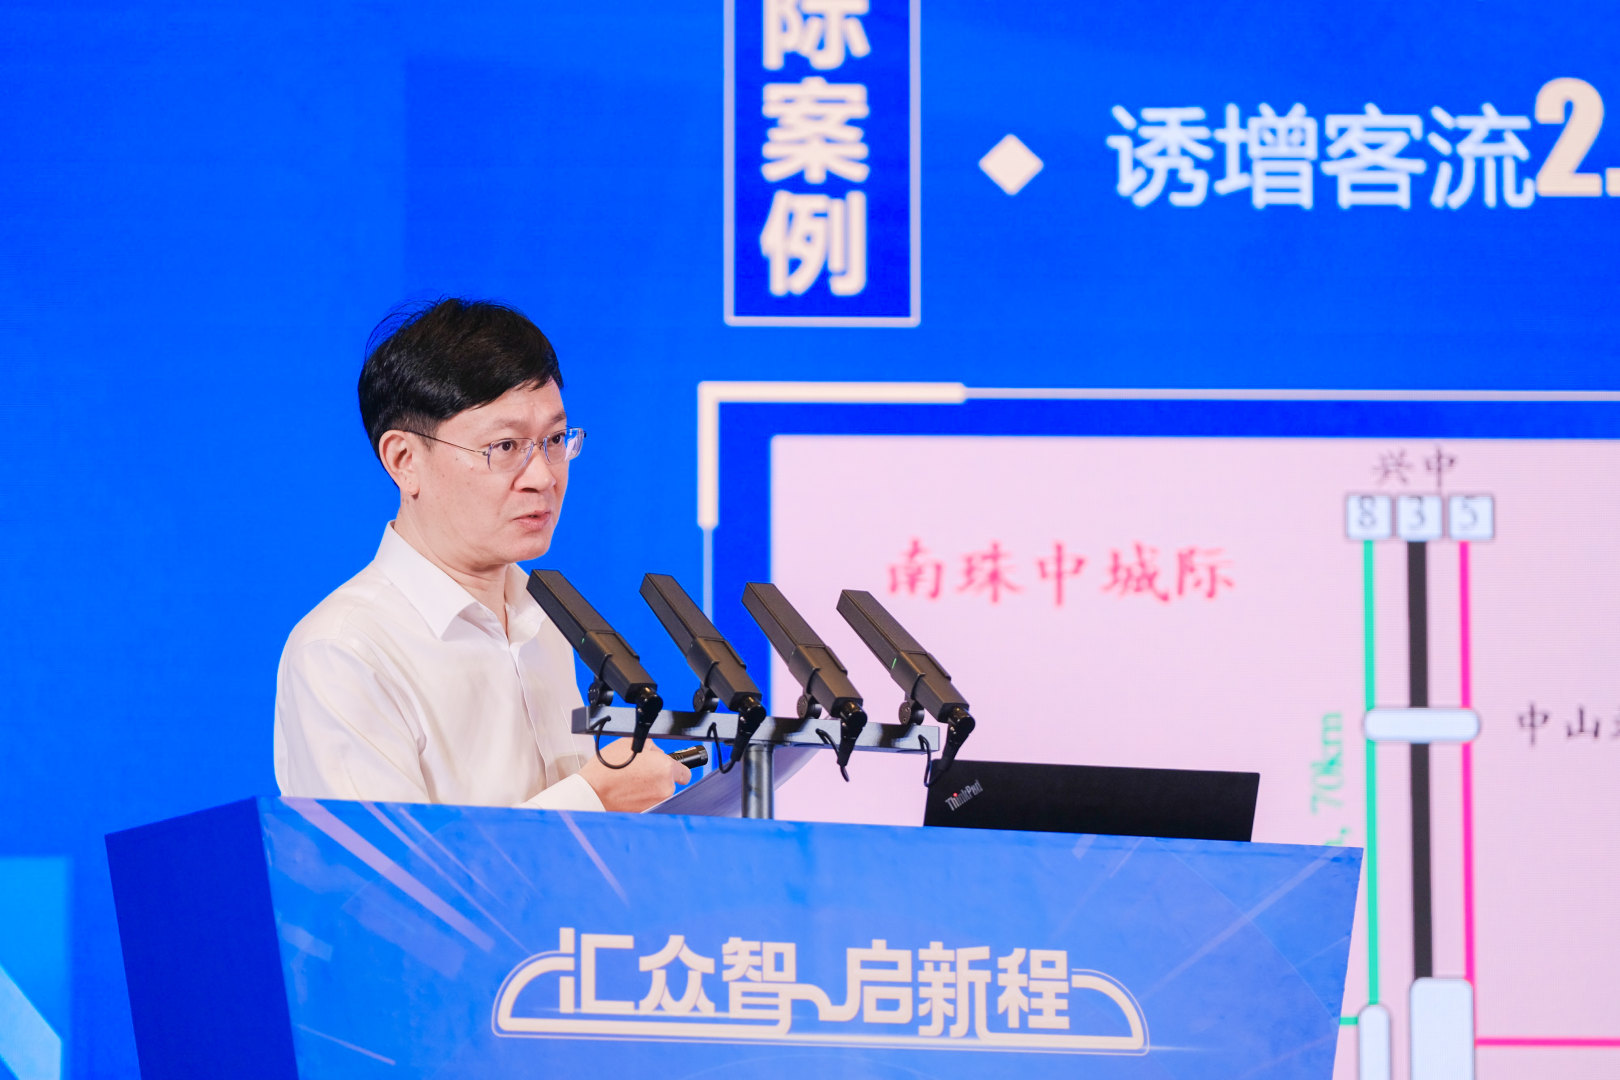 4、廣州地鐵集團總經理劉智成在論壇主旨發言。.jpg